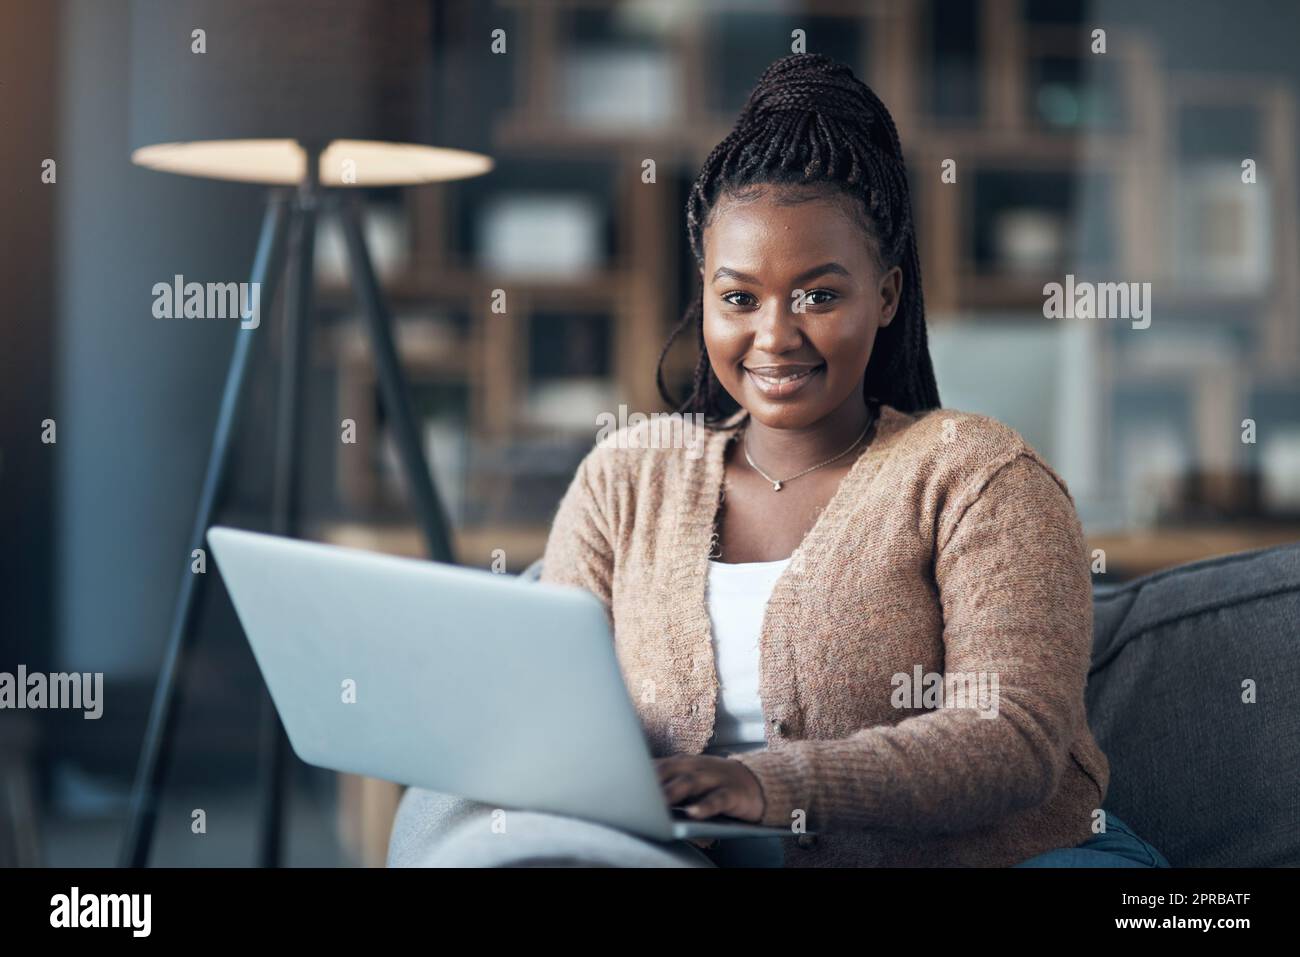 Jede Zeit ist Filmzeit. Eine attraktive junge Frau, die allein in ihrem Wohnzimmer sitzt und ihren Laptop benutzt. Stockfoto